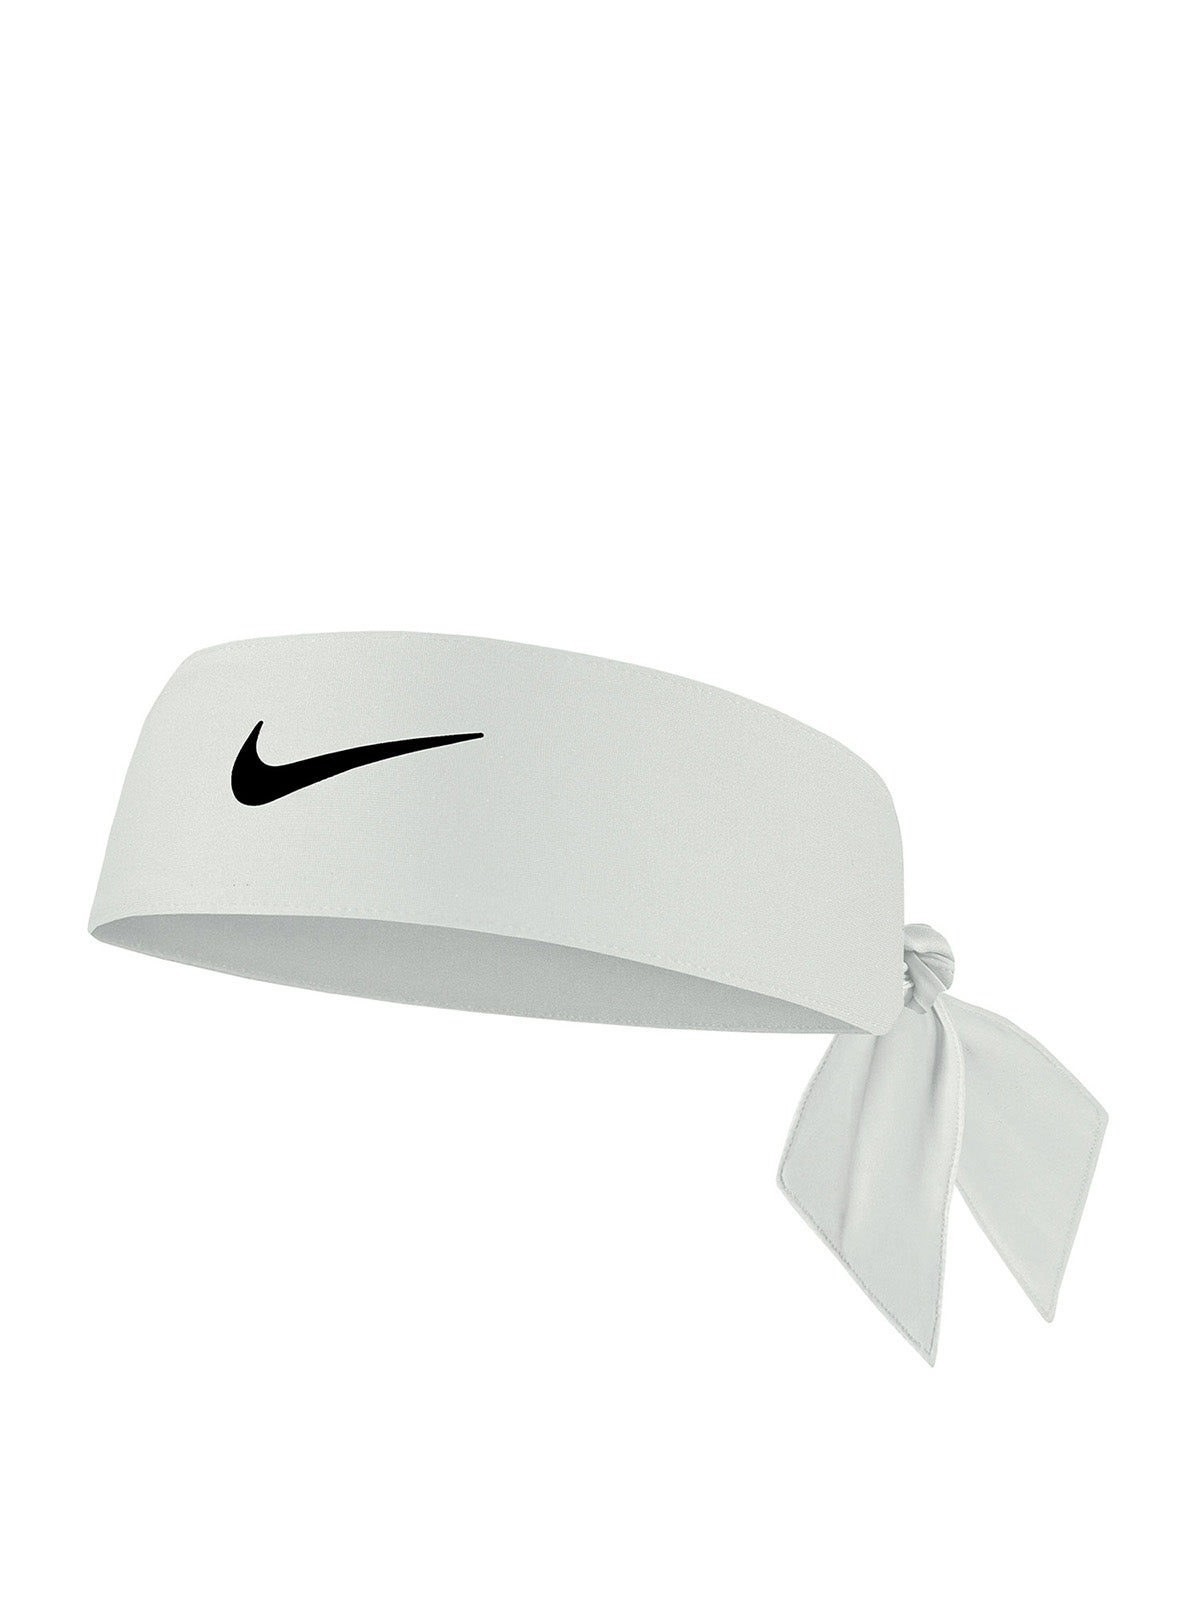 Fasce Unisex Nike - Dri-Fit Head Tie - Bianco